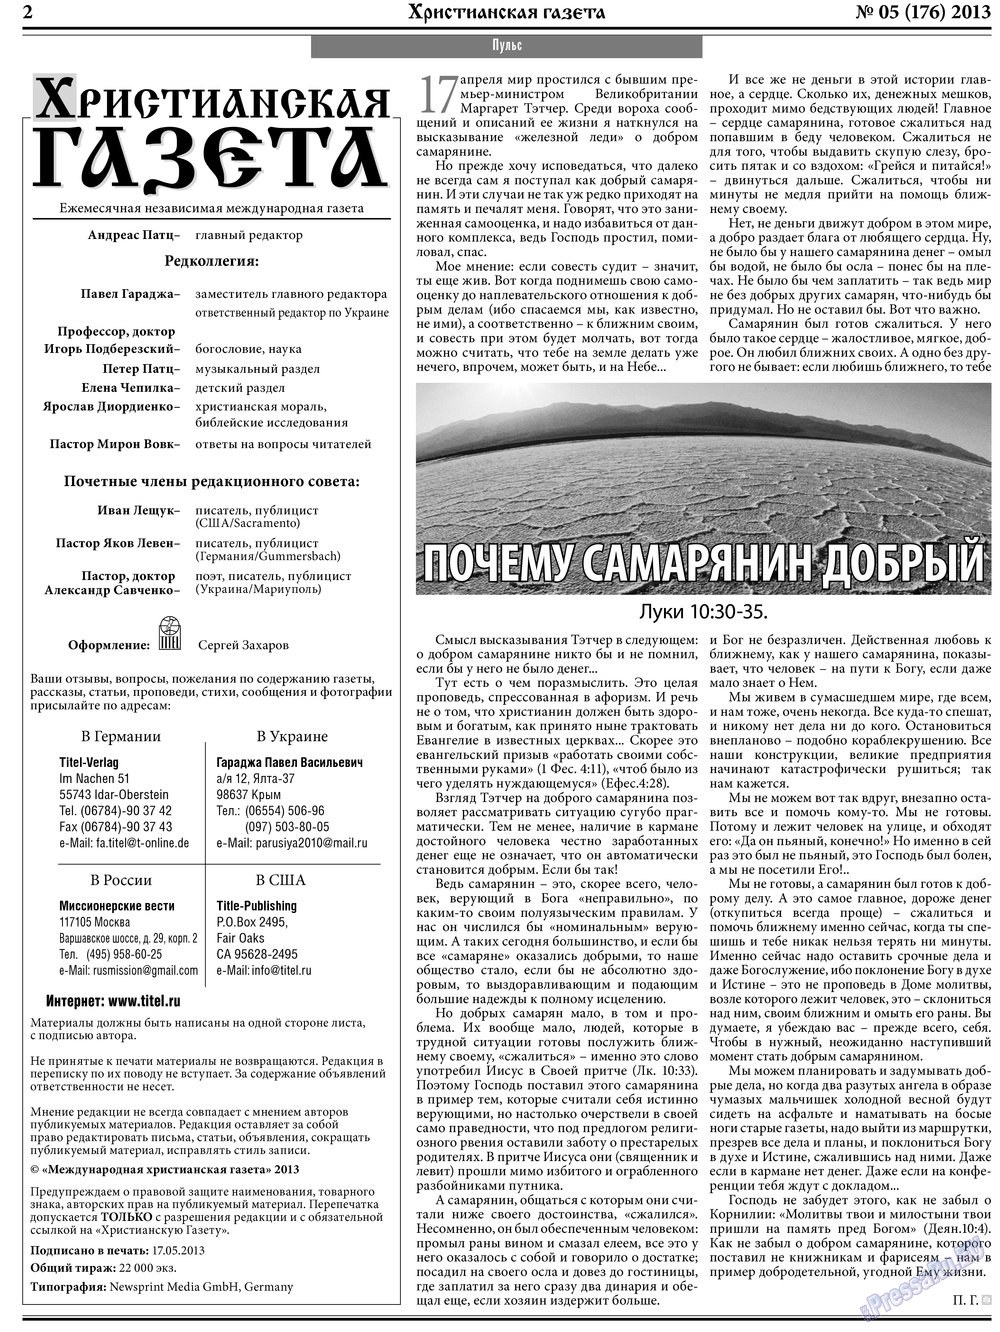 Христианская газета, газета. 2013 №5 стр.2